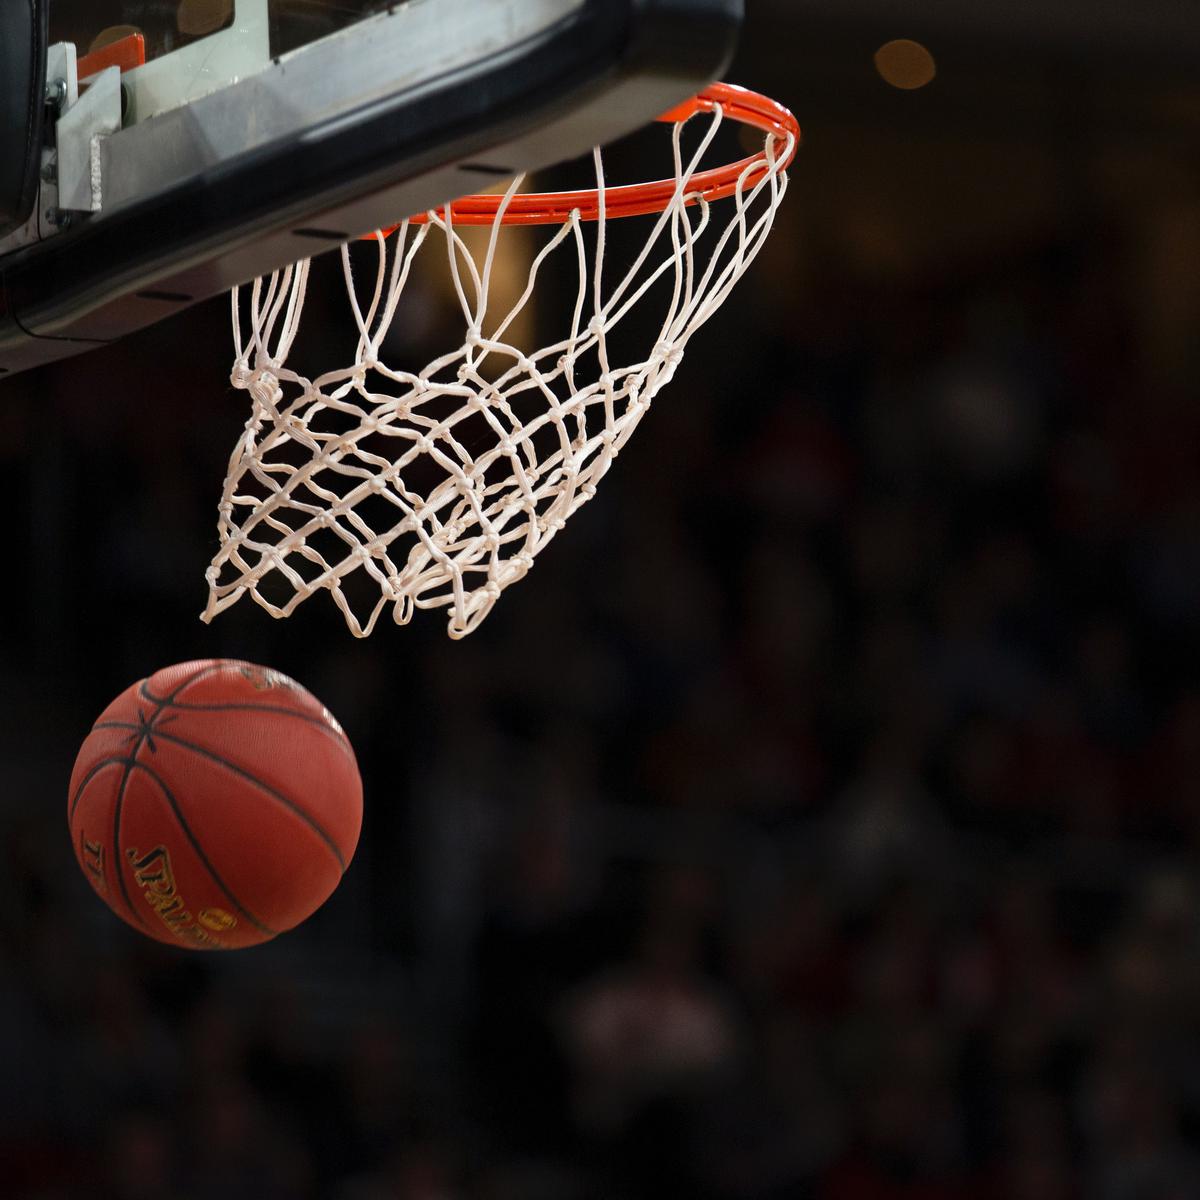 Pengertian Bola Basket, Sejarah, Peraturan, dan Manfaatnya bagi Tubuh -  Ragam Bola.com